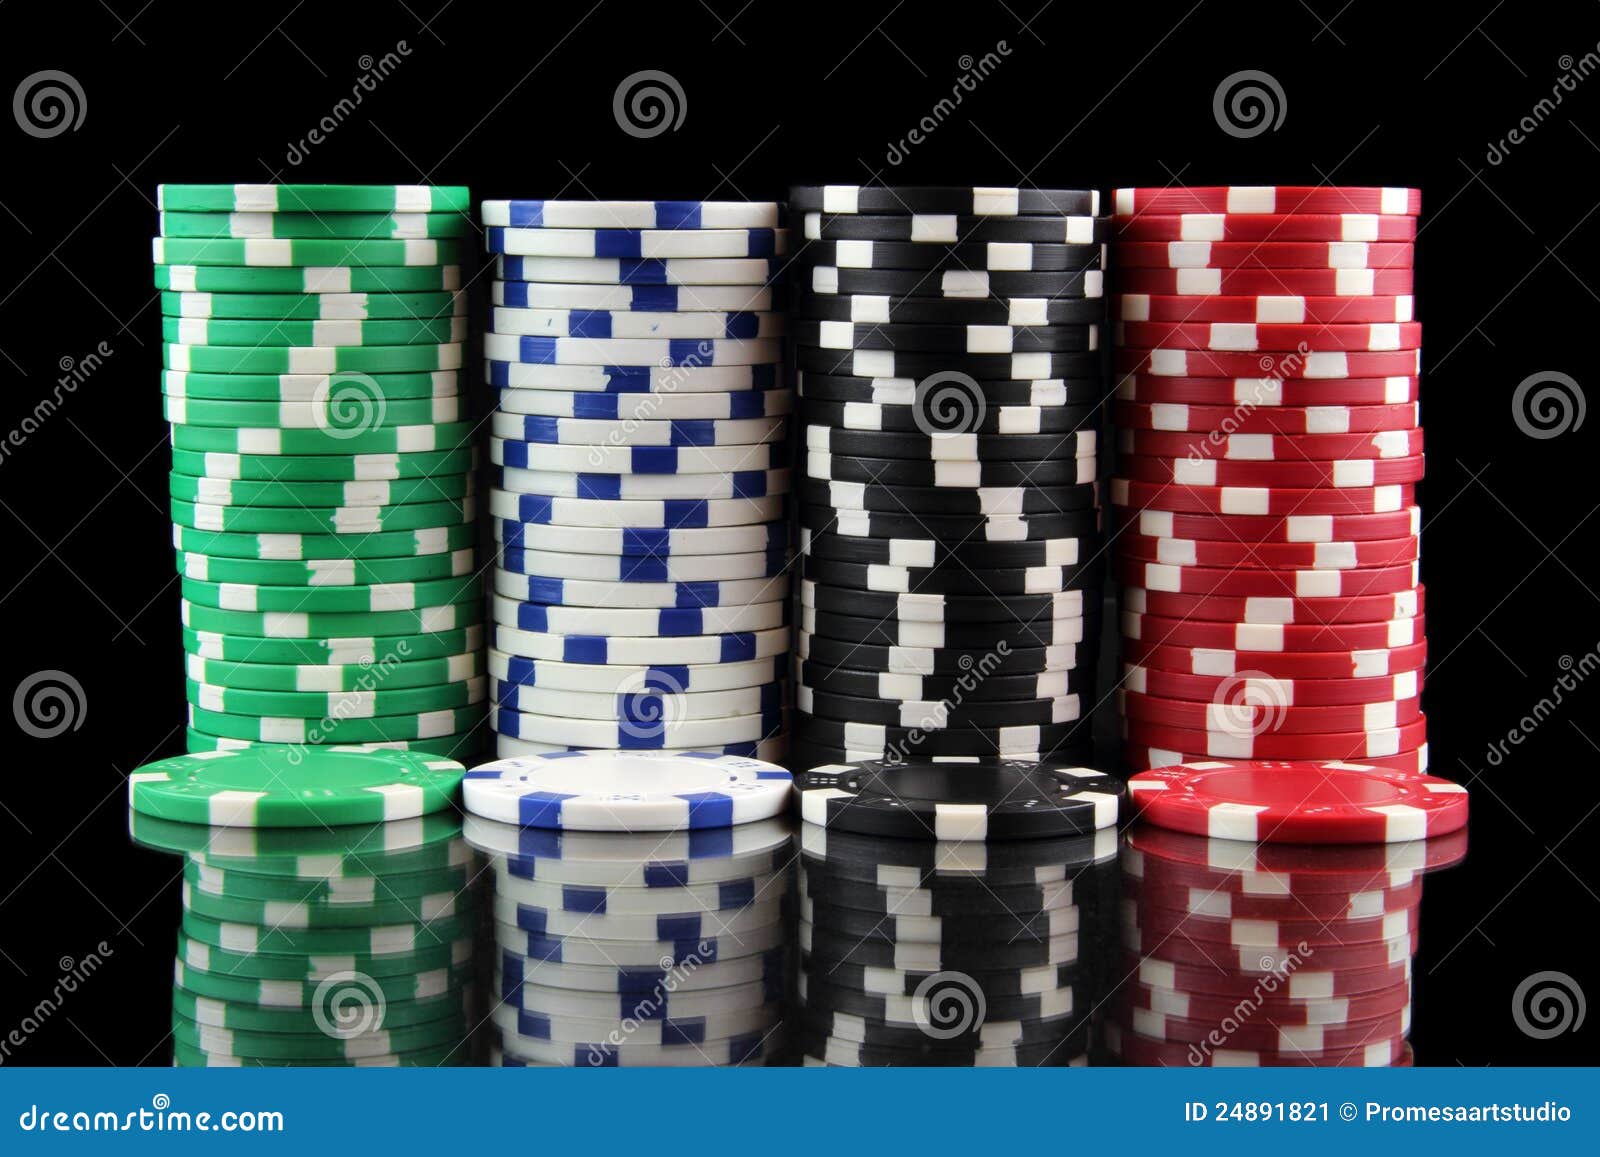 stack казино